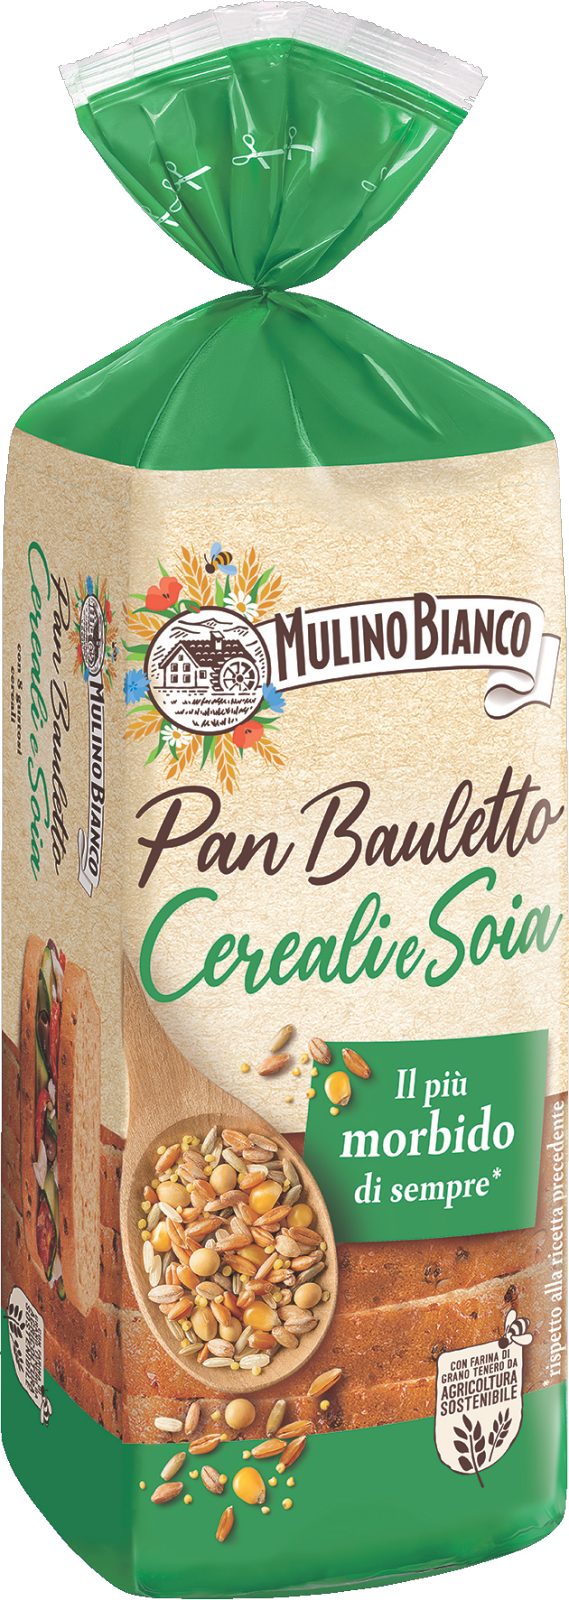 Pan Bauletto Cereali e Soia